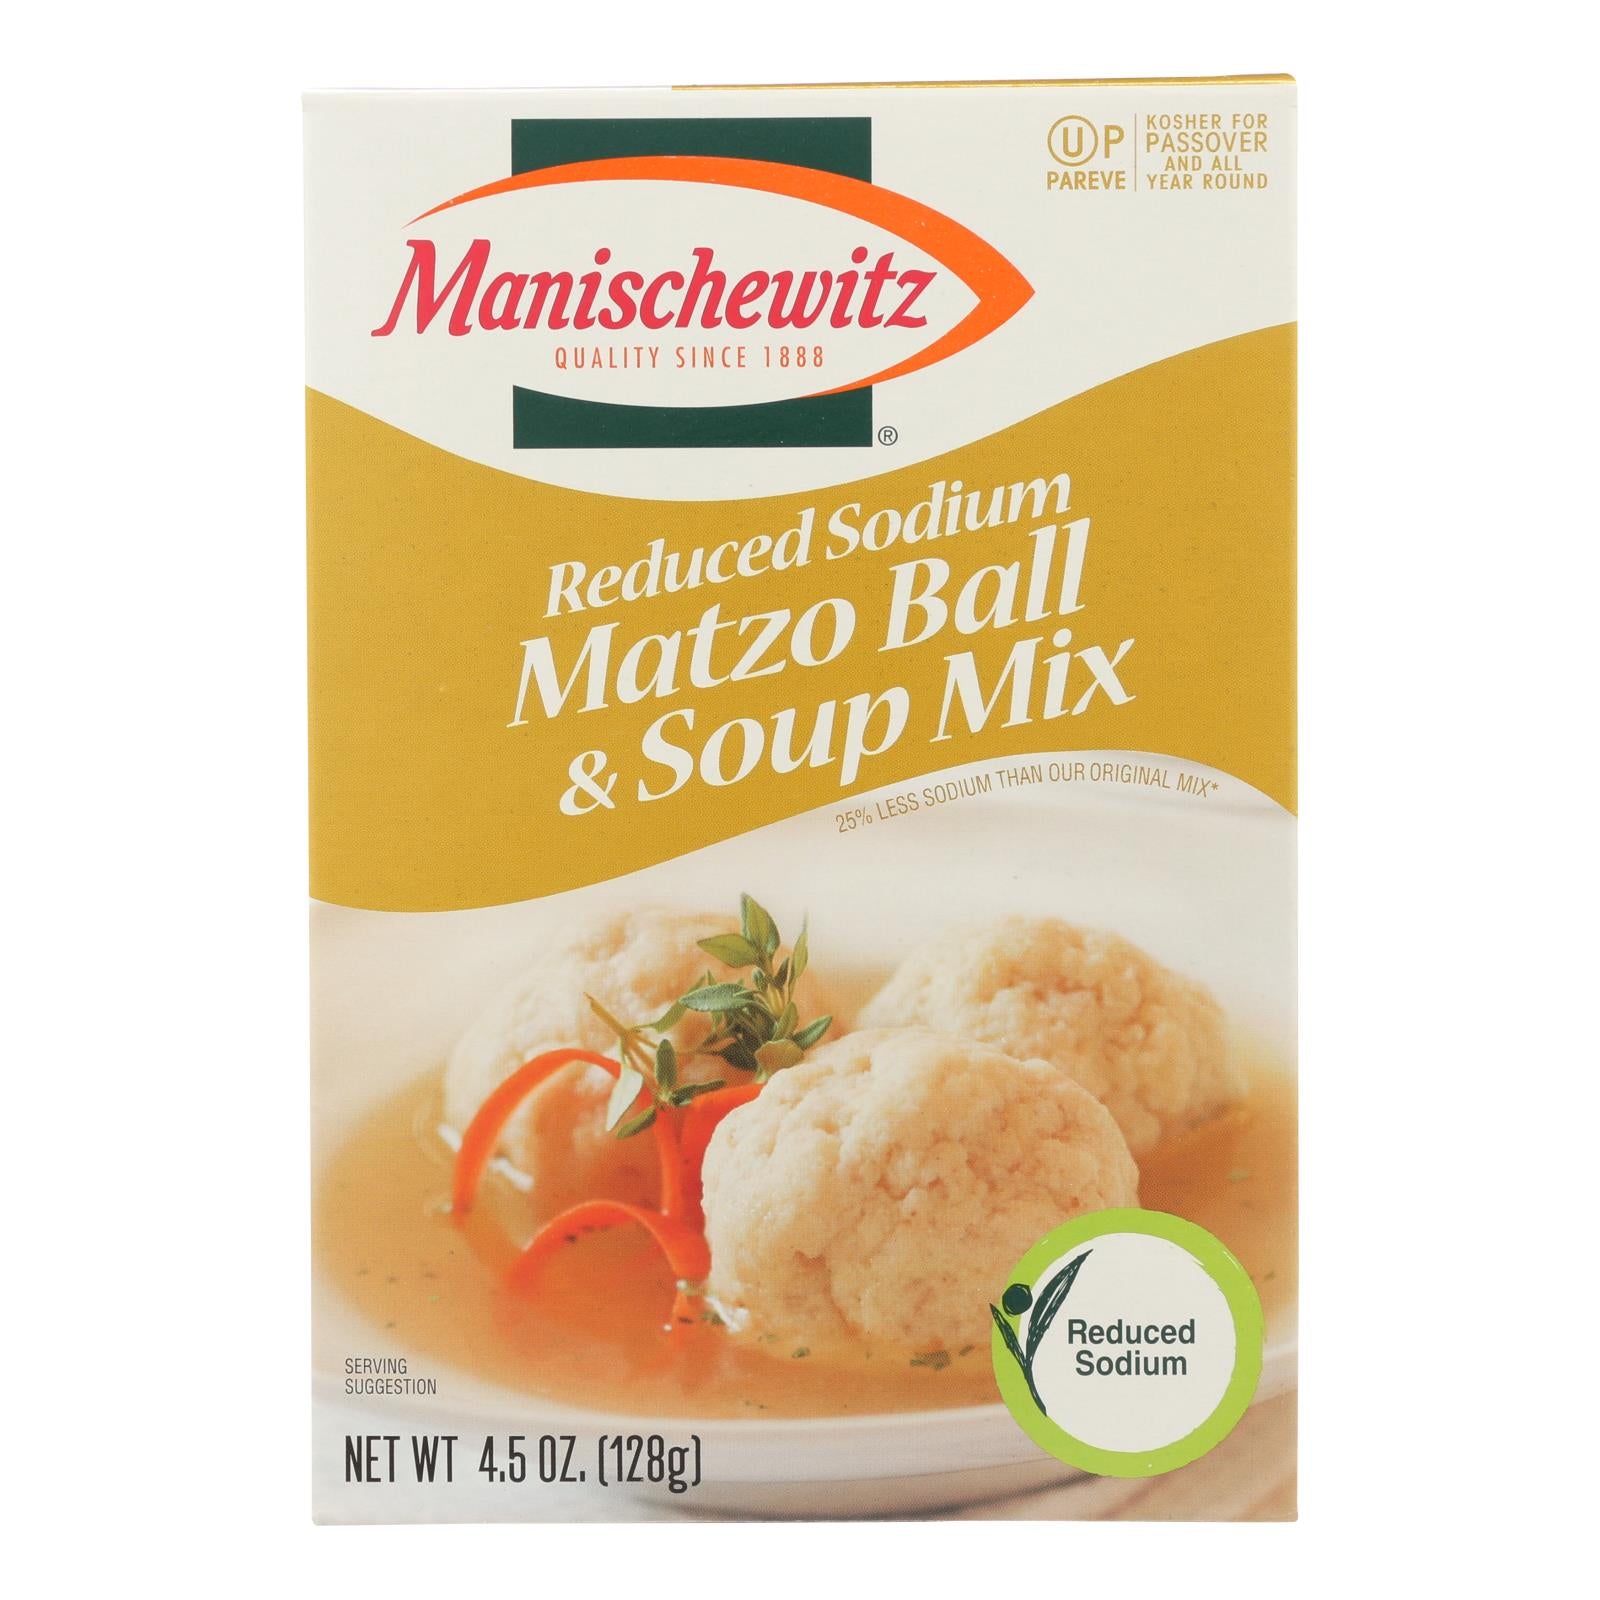 Manischewitz, Manischewitz - Mélange pour boules de matzo et soupe - faible teneur en sodium - caisse de 12 - 4,5 oz (paquet de 12)